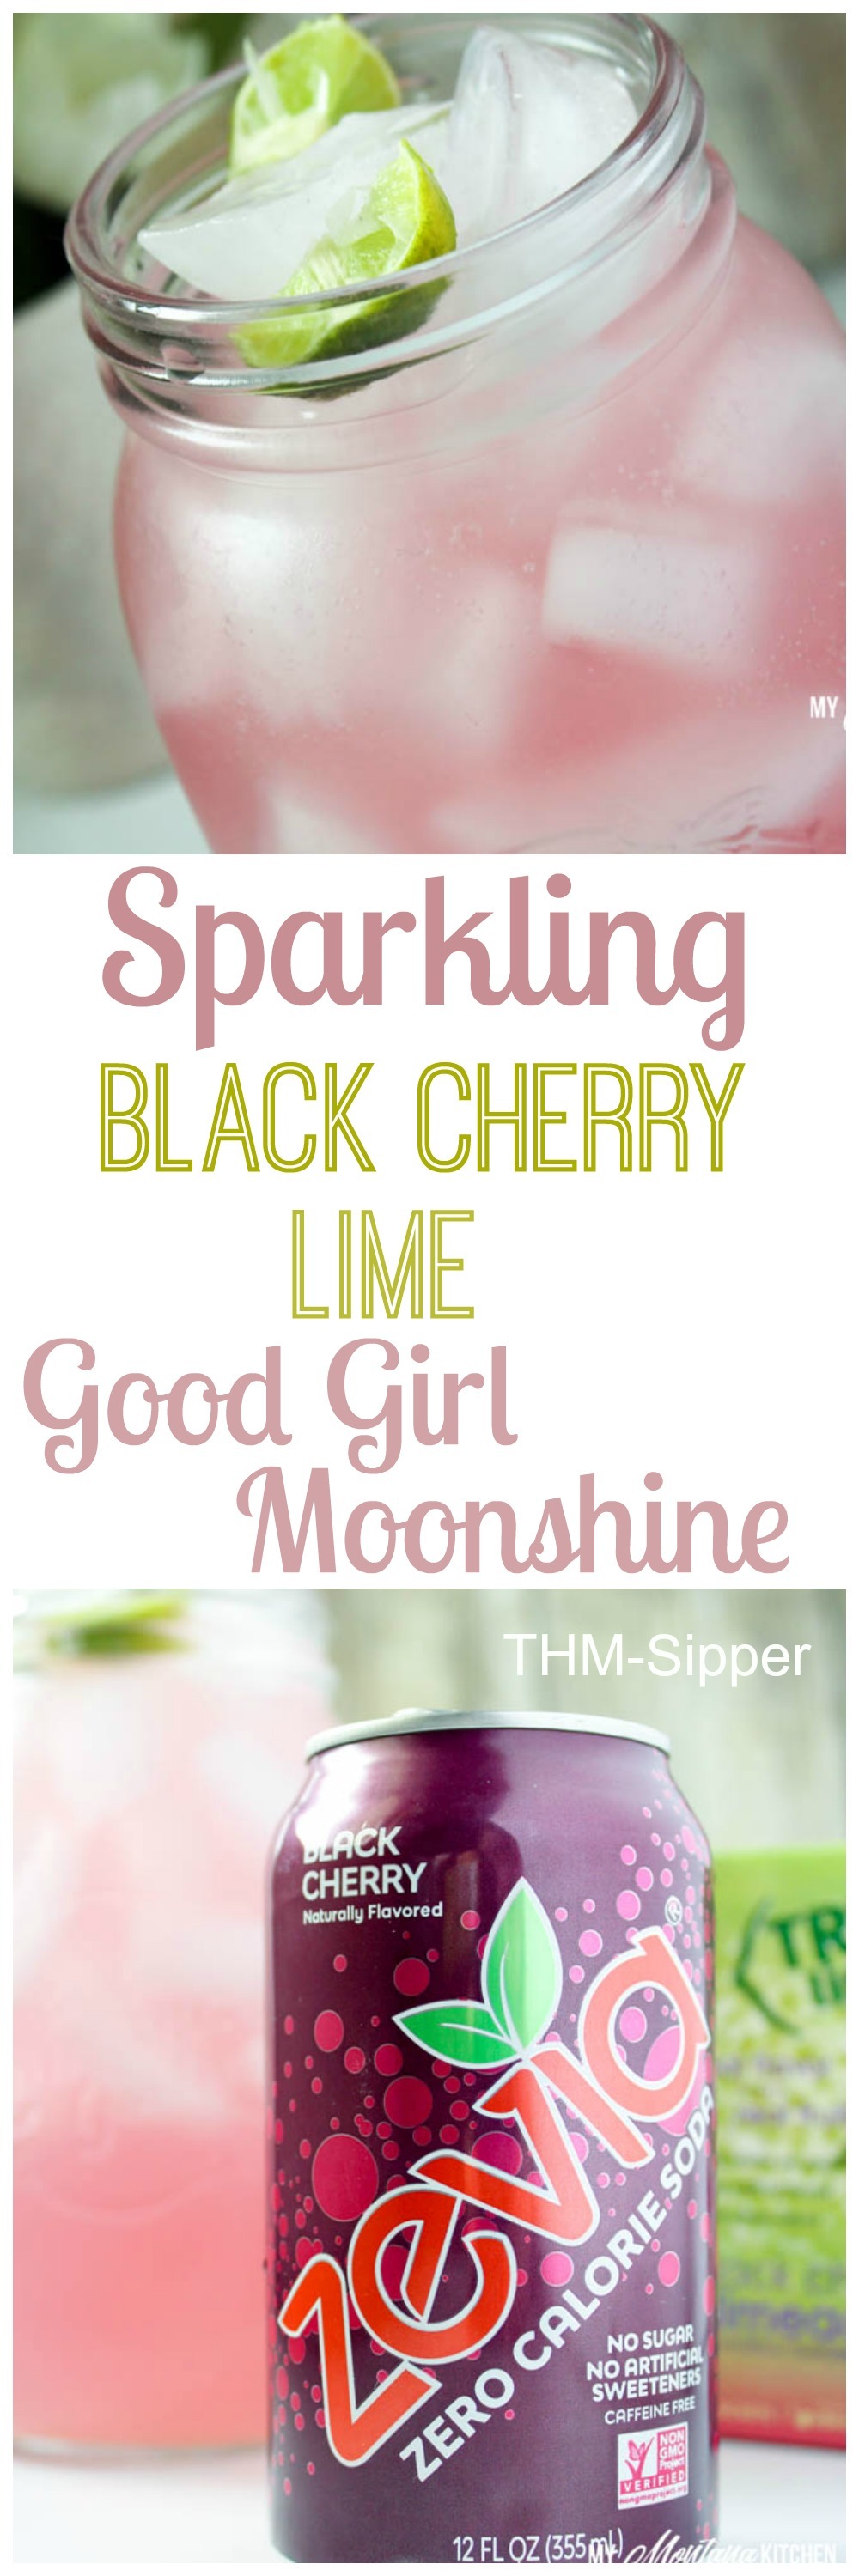 Sparkling Good Girl Moonshine